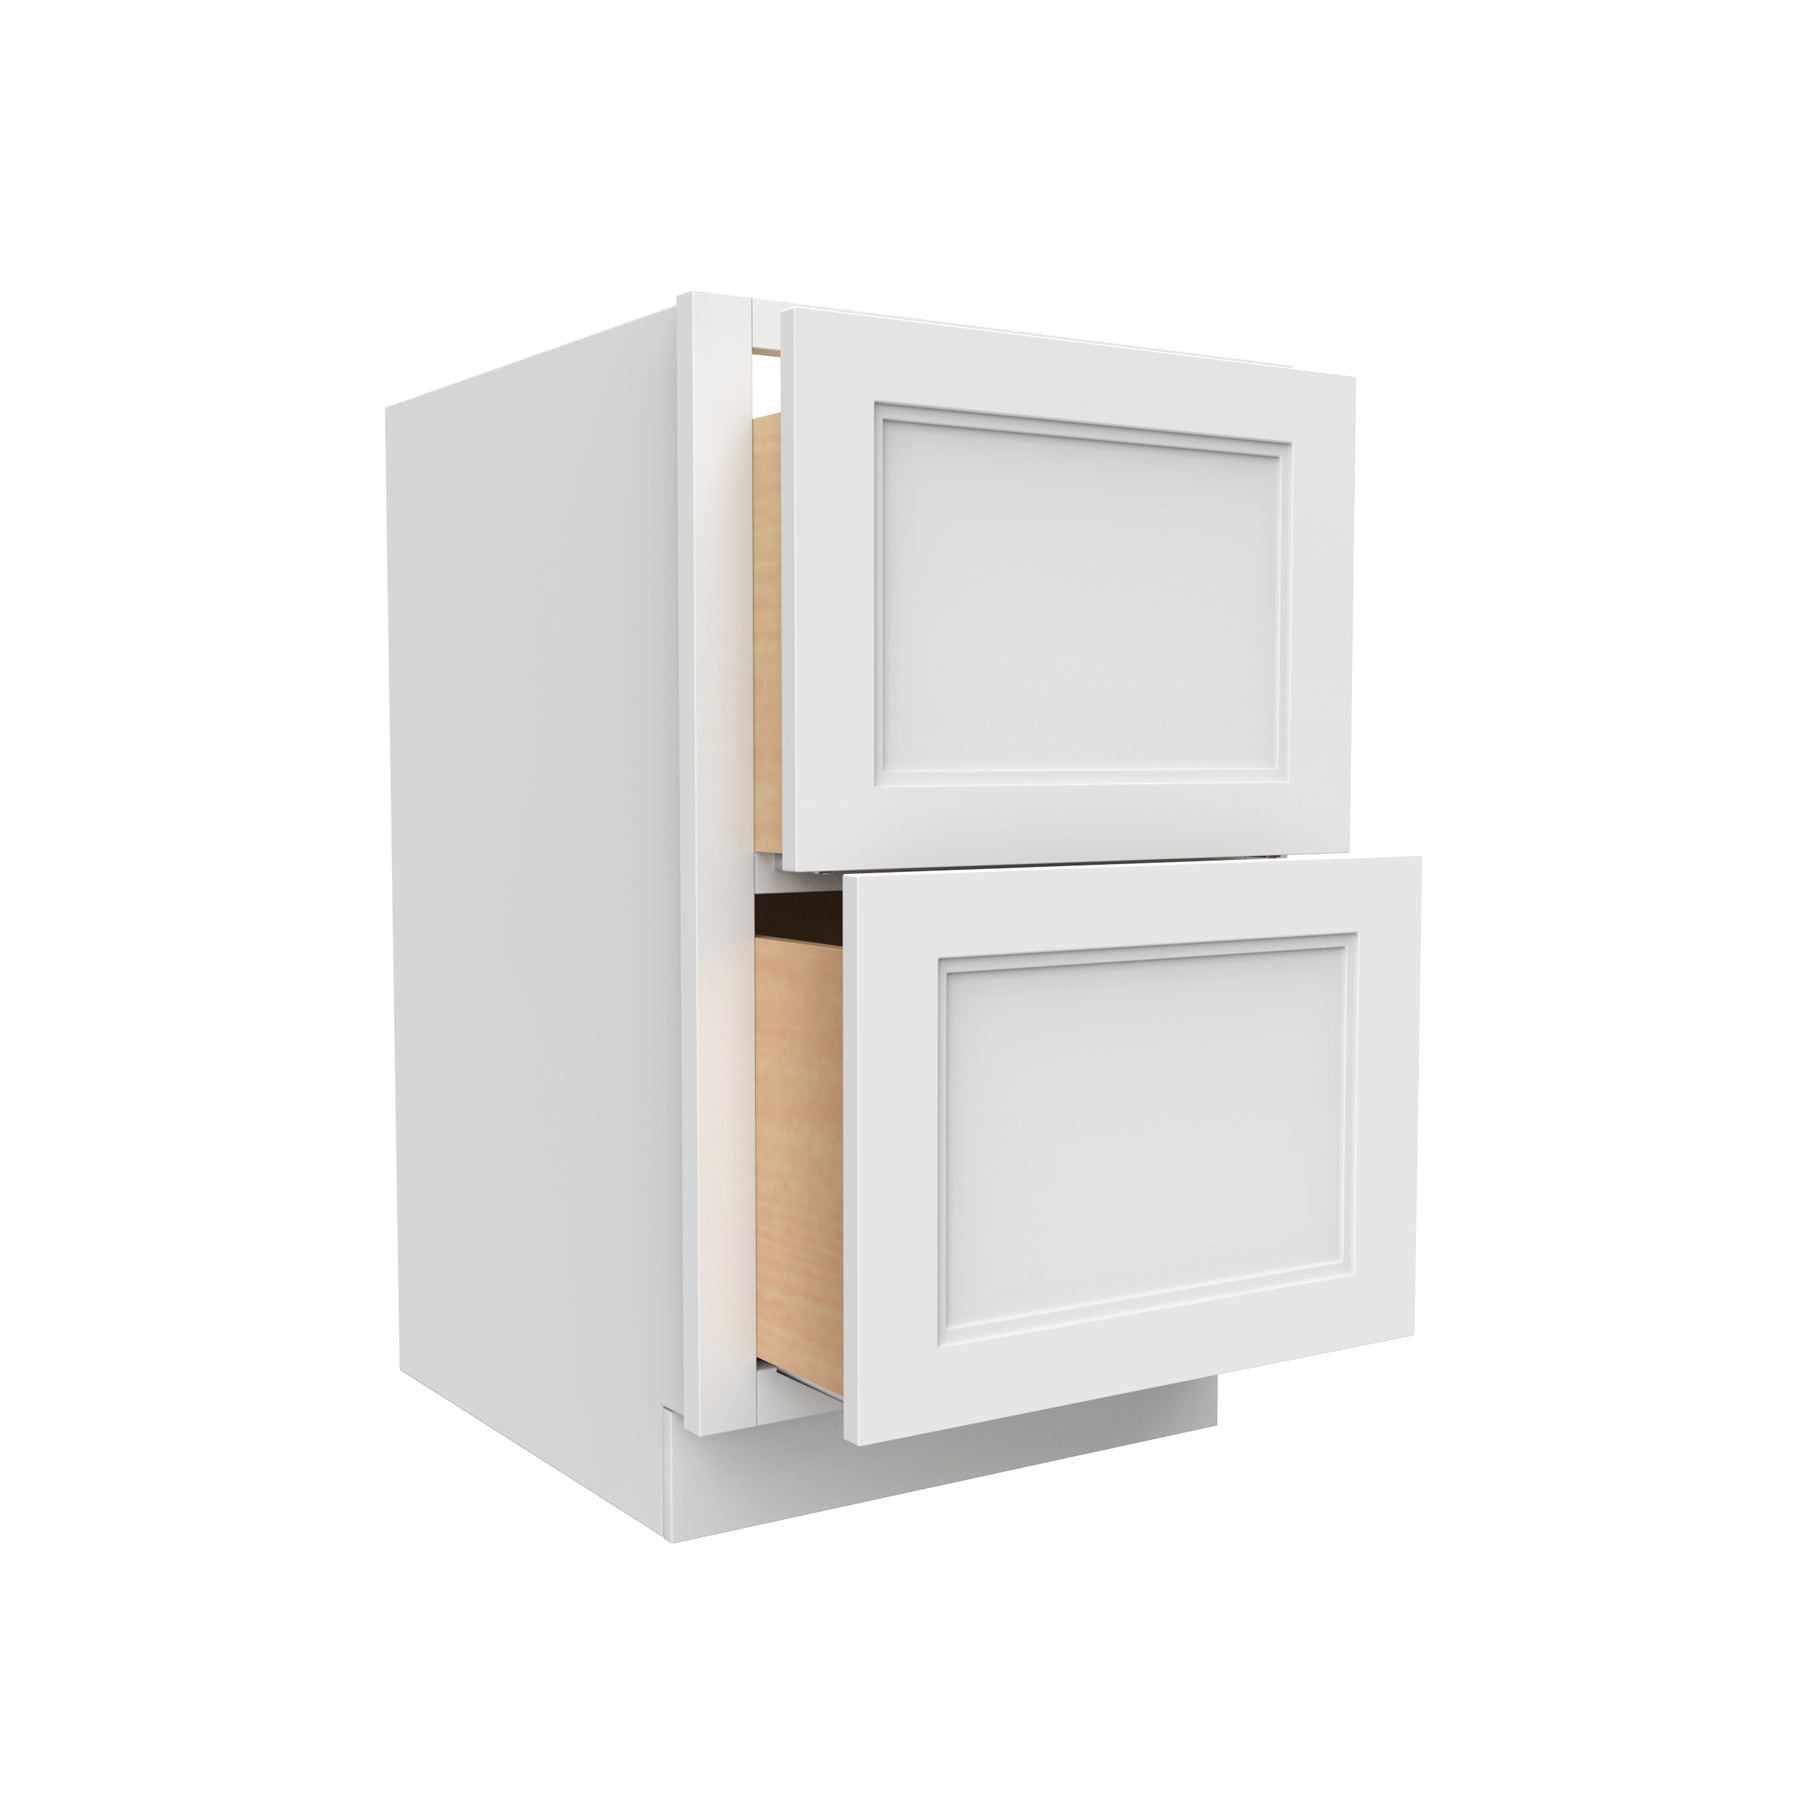 RTA - Fashion White - 2 Drawer Base Cabinet | 30"W x 34.5"H x 24"D